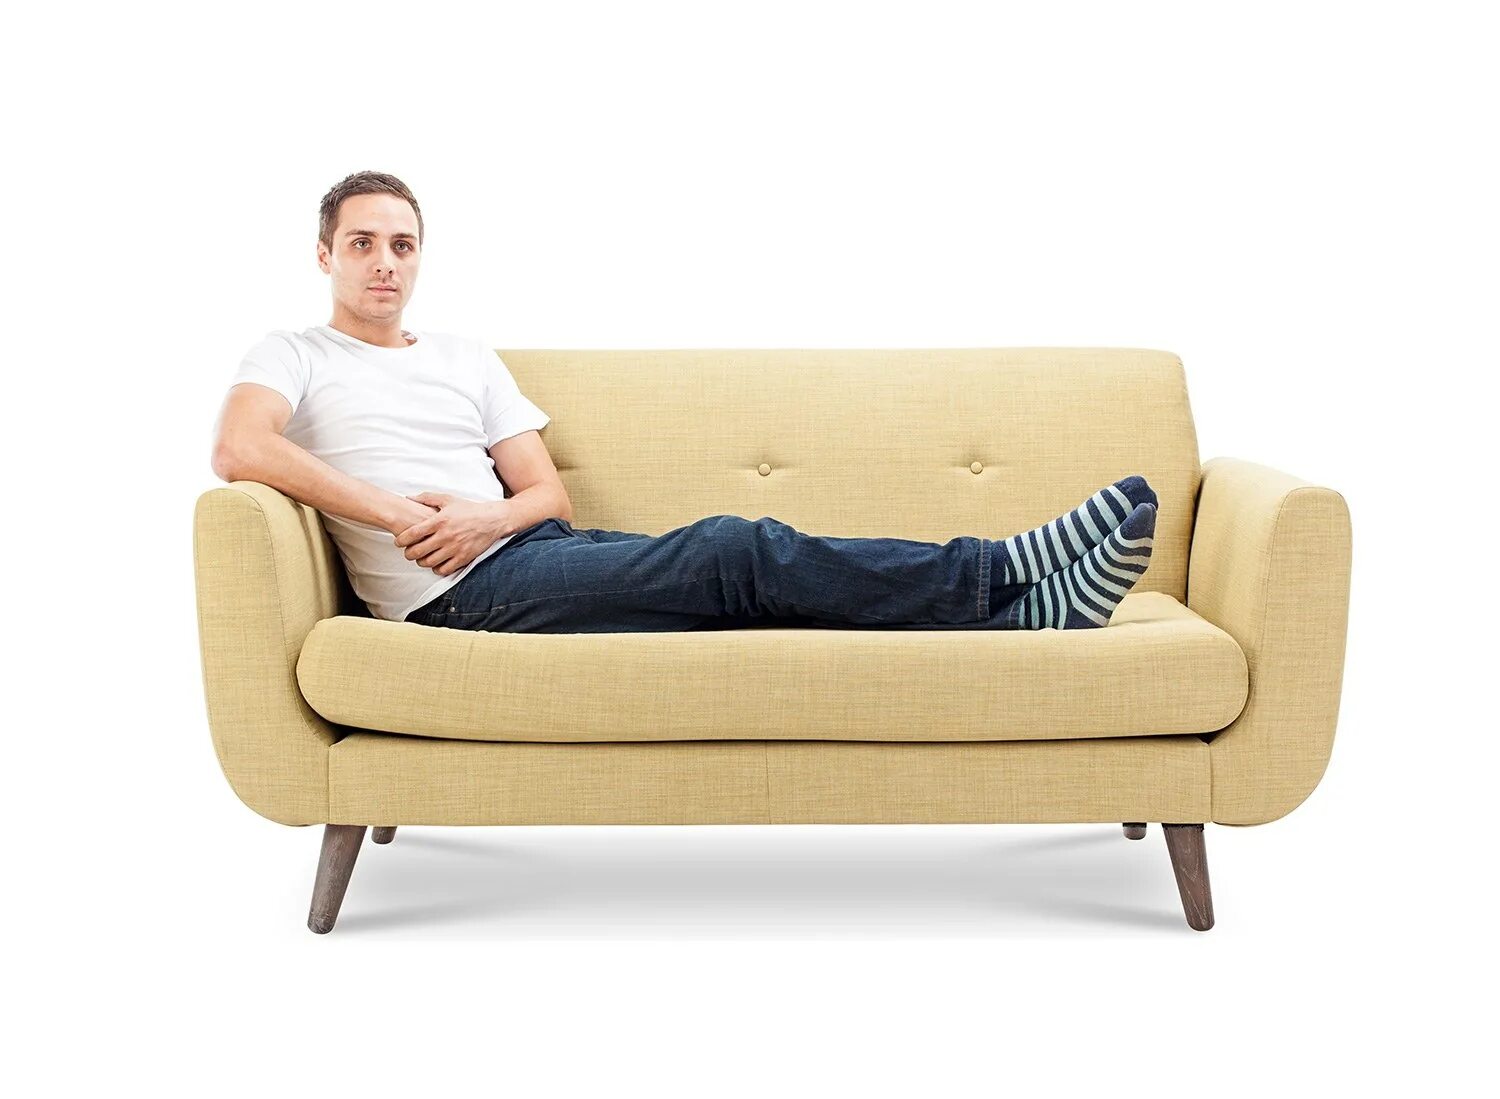 Человек полулежит на диване. Диван полулежа. Человек сидит на диване. Сидячий человек на диване.